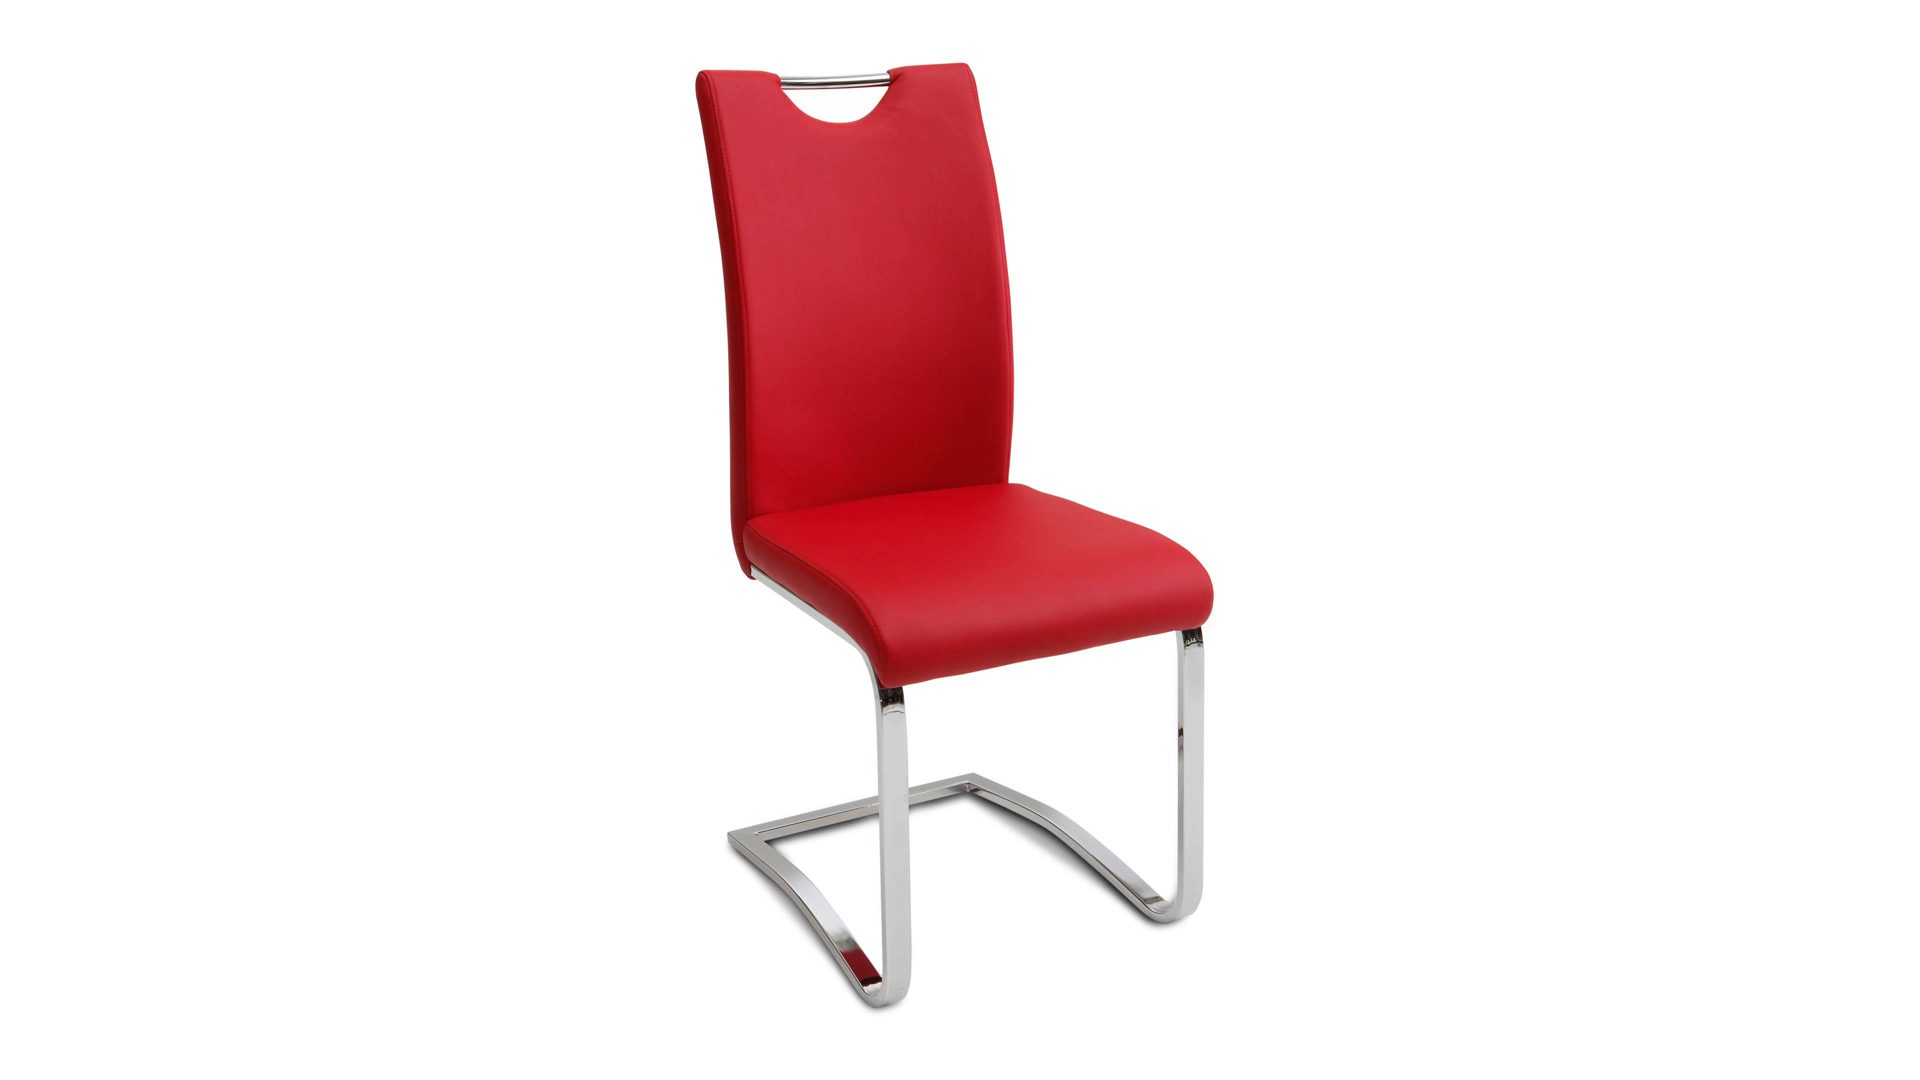 Schwingstuhl Mca furniture aus Stoff in Rot Schwingstuhl bzw. Freischwinger als Esszimmermöbel rotes Kunstleder CPR & verchromtes Gestell